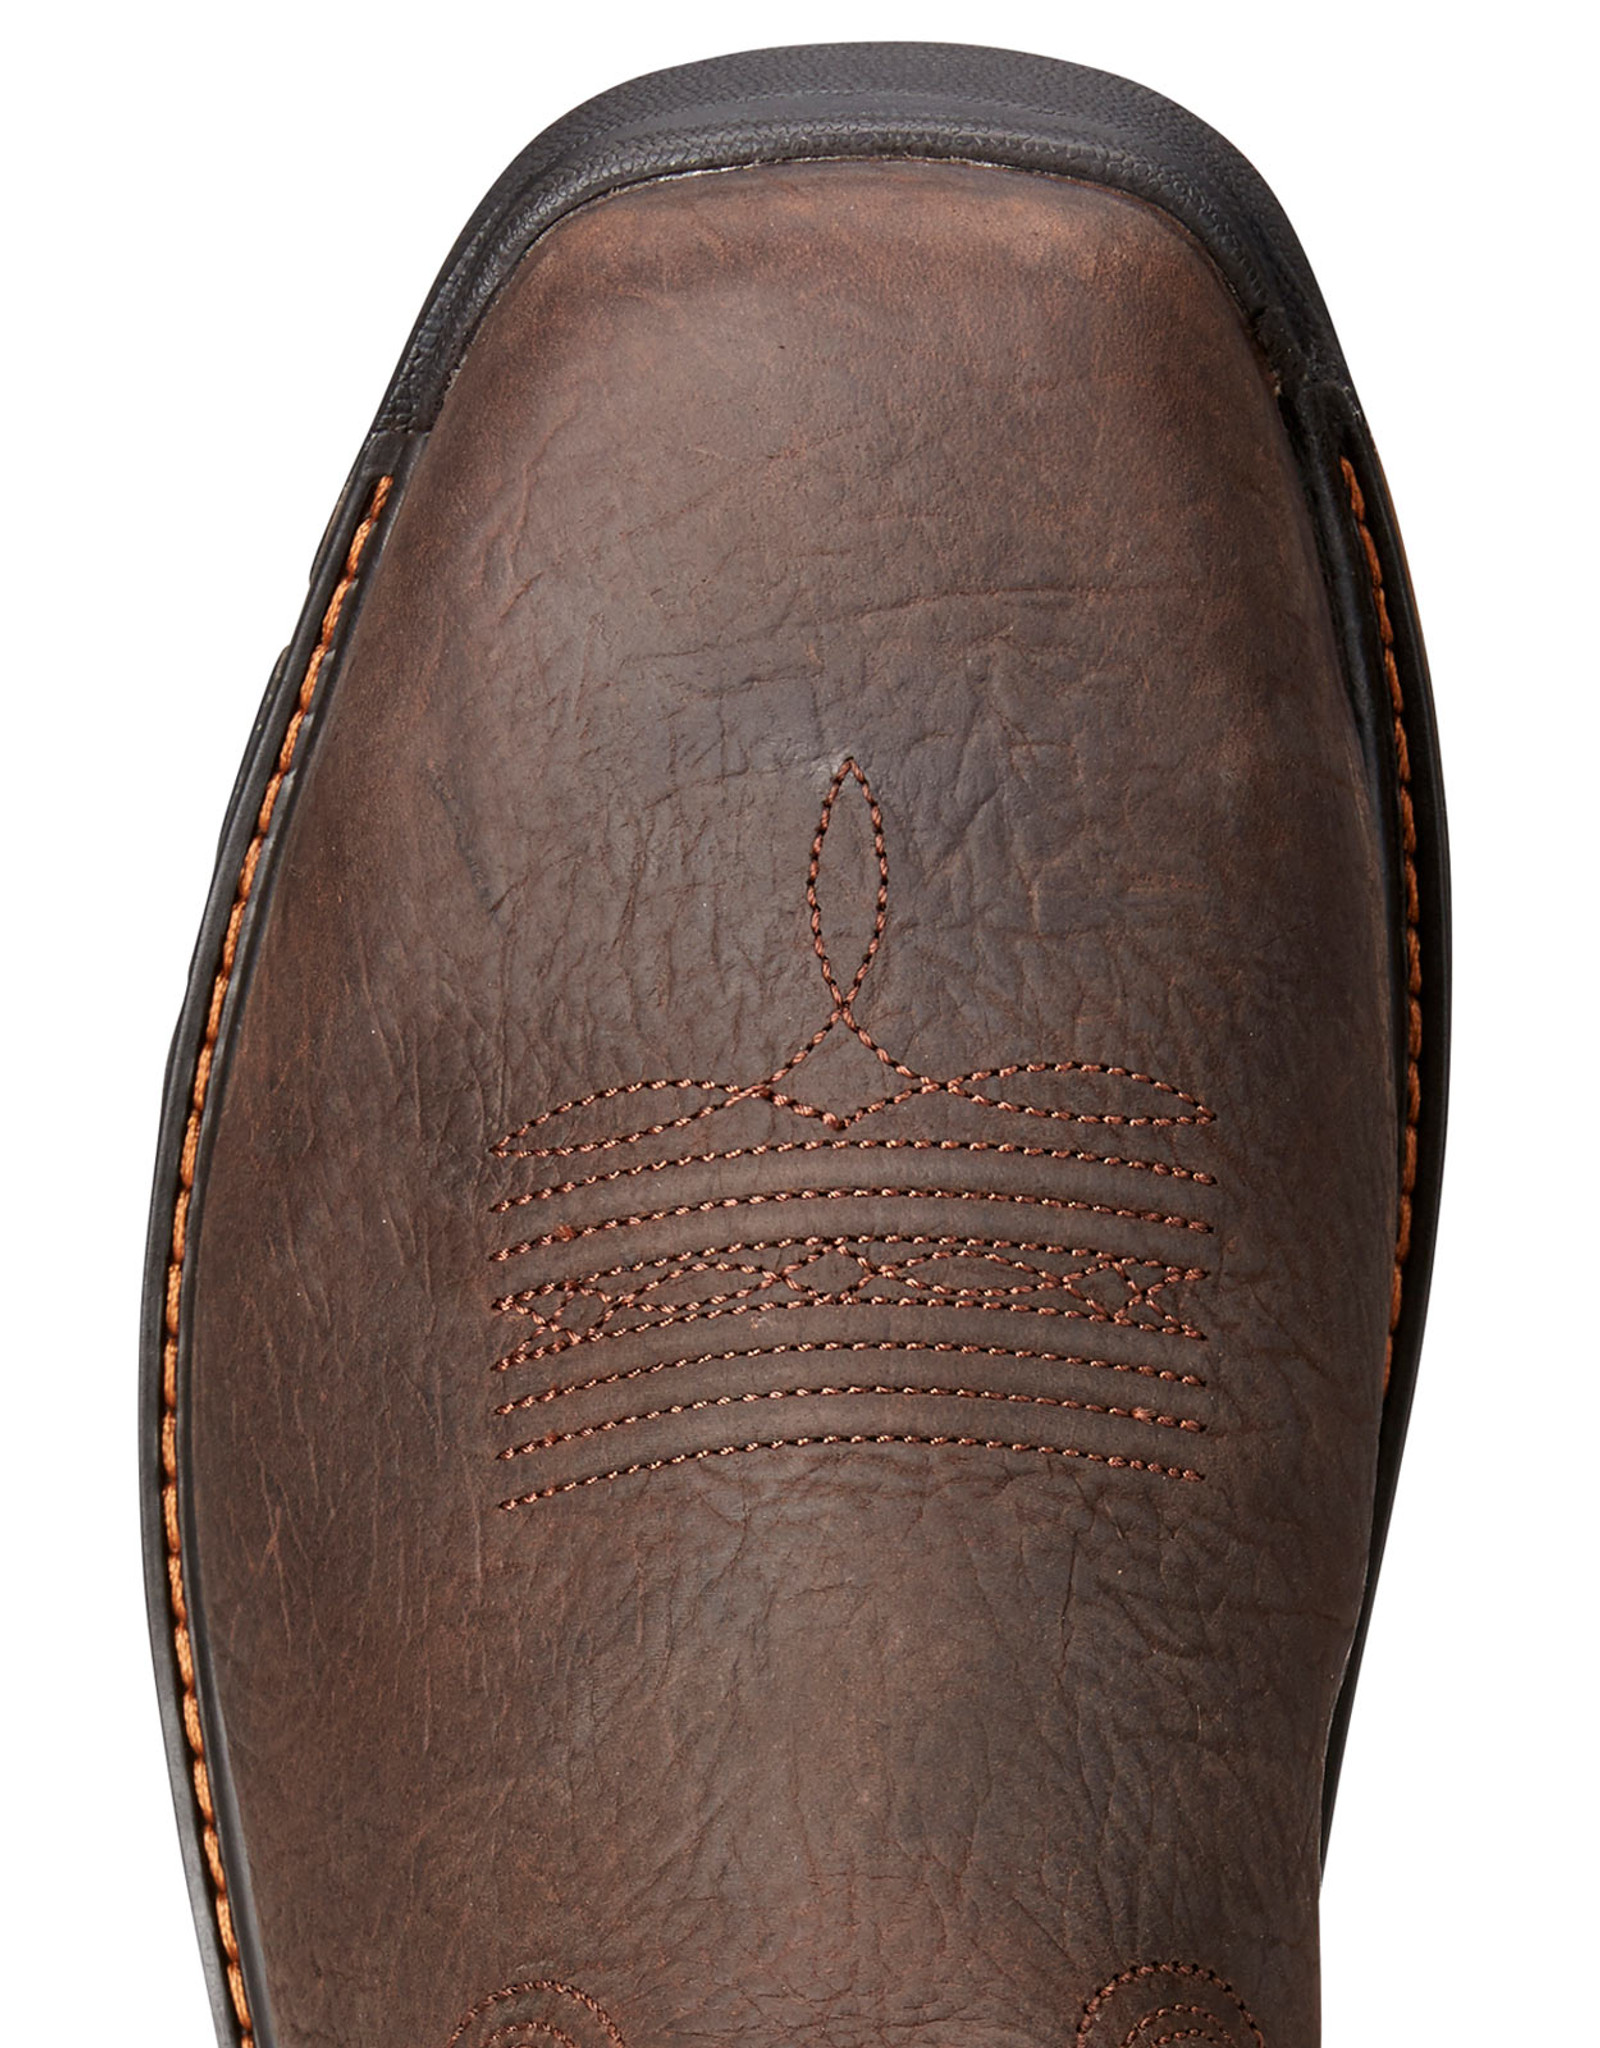 Ariat Men's Intrepid Venttek 11" Square Composite Toe Work Boots - Brown/Orange